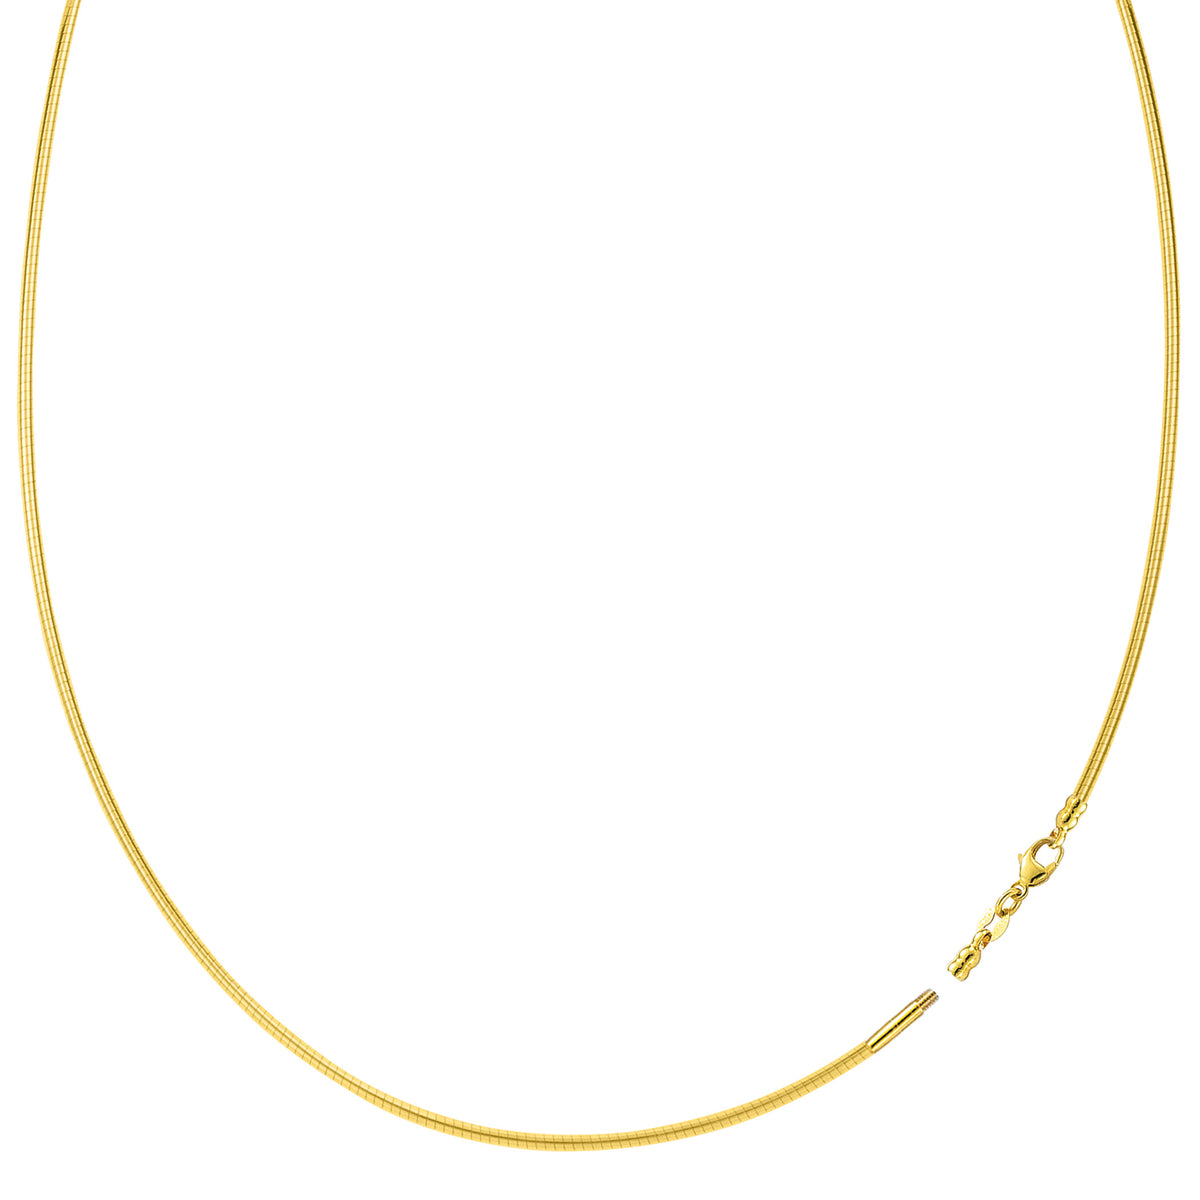 Runt Omega Chain Halsband med skruvlås i 14k gult guld fina designersmycken för män och kvinnor